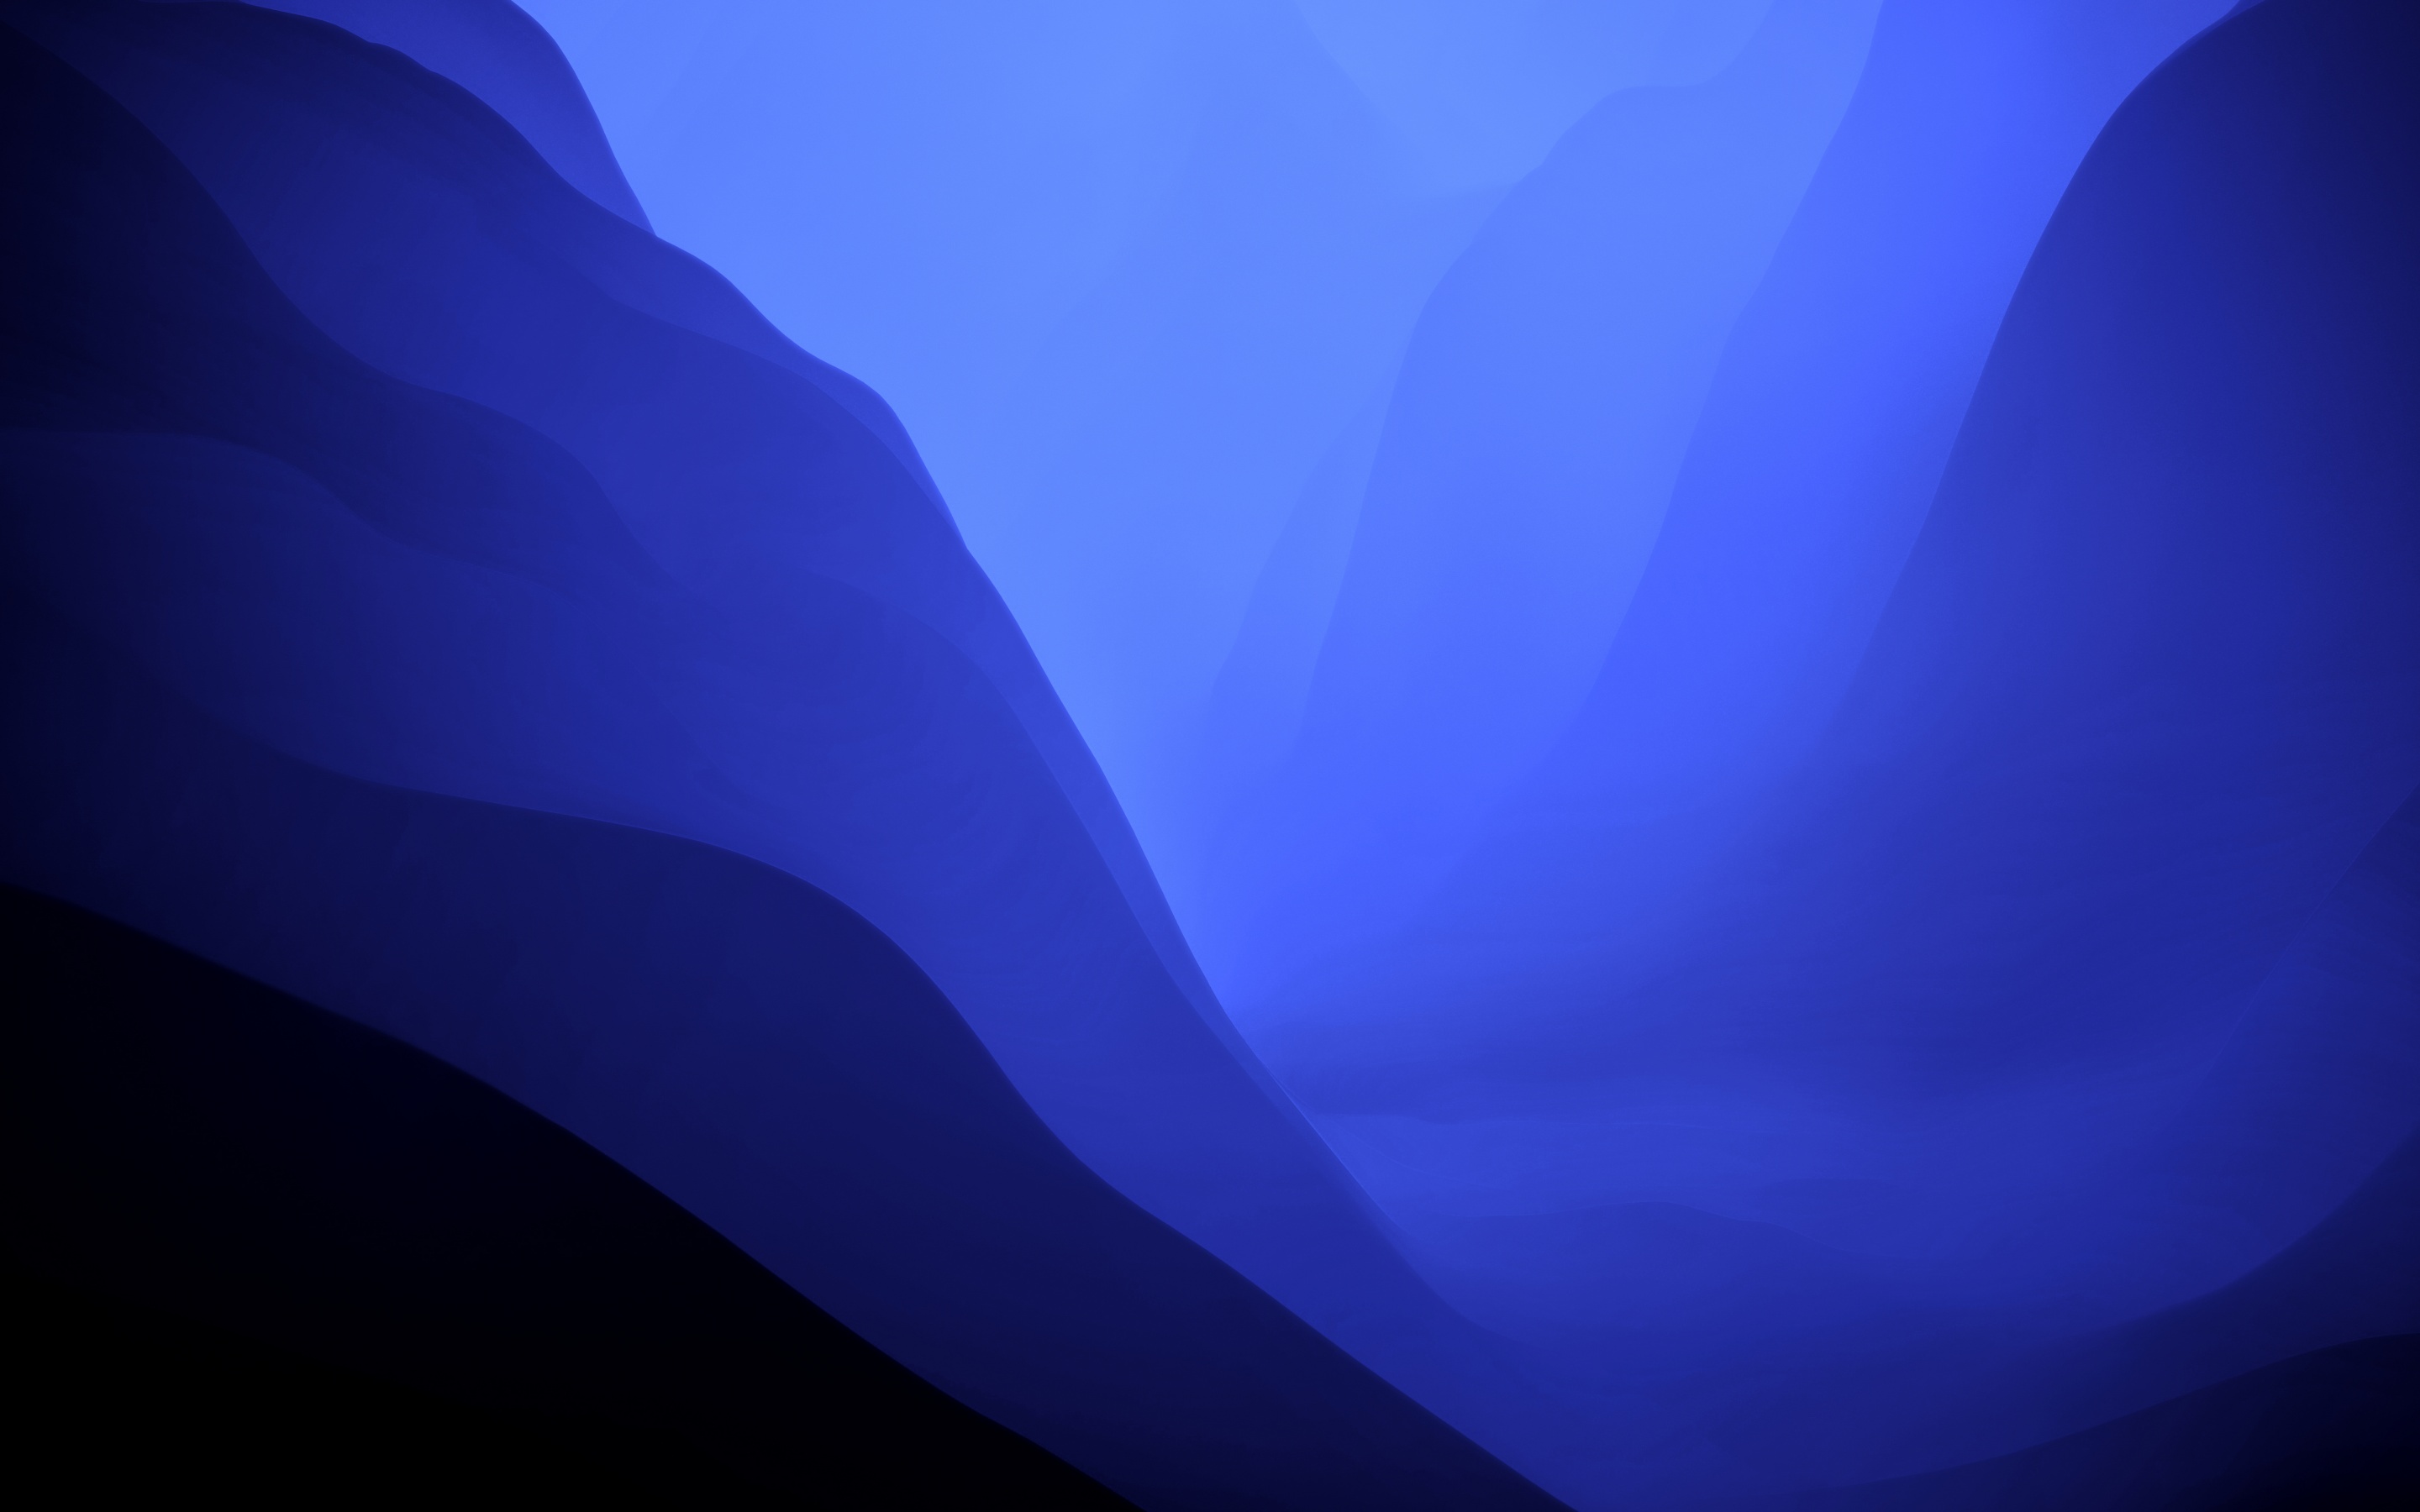 Với màu xanh dương chủ đạo và độ sáng tối độc đáo, hình nền macOS Monterey này càng làm tăng thêm vẻ đẹp tinh tế và hiện đại của thiết bị của bạn. Đặc biệt, các màu chuyển động rất sắc nét và miễn phí để tải về. Tự hào chắc chắn sẽ thích hợp với phong cách của bạn, tải xuống ngay để trải nghiệm.